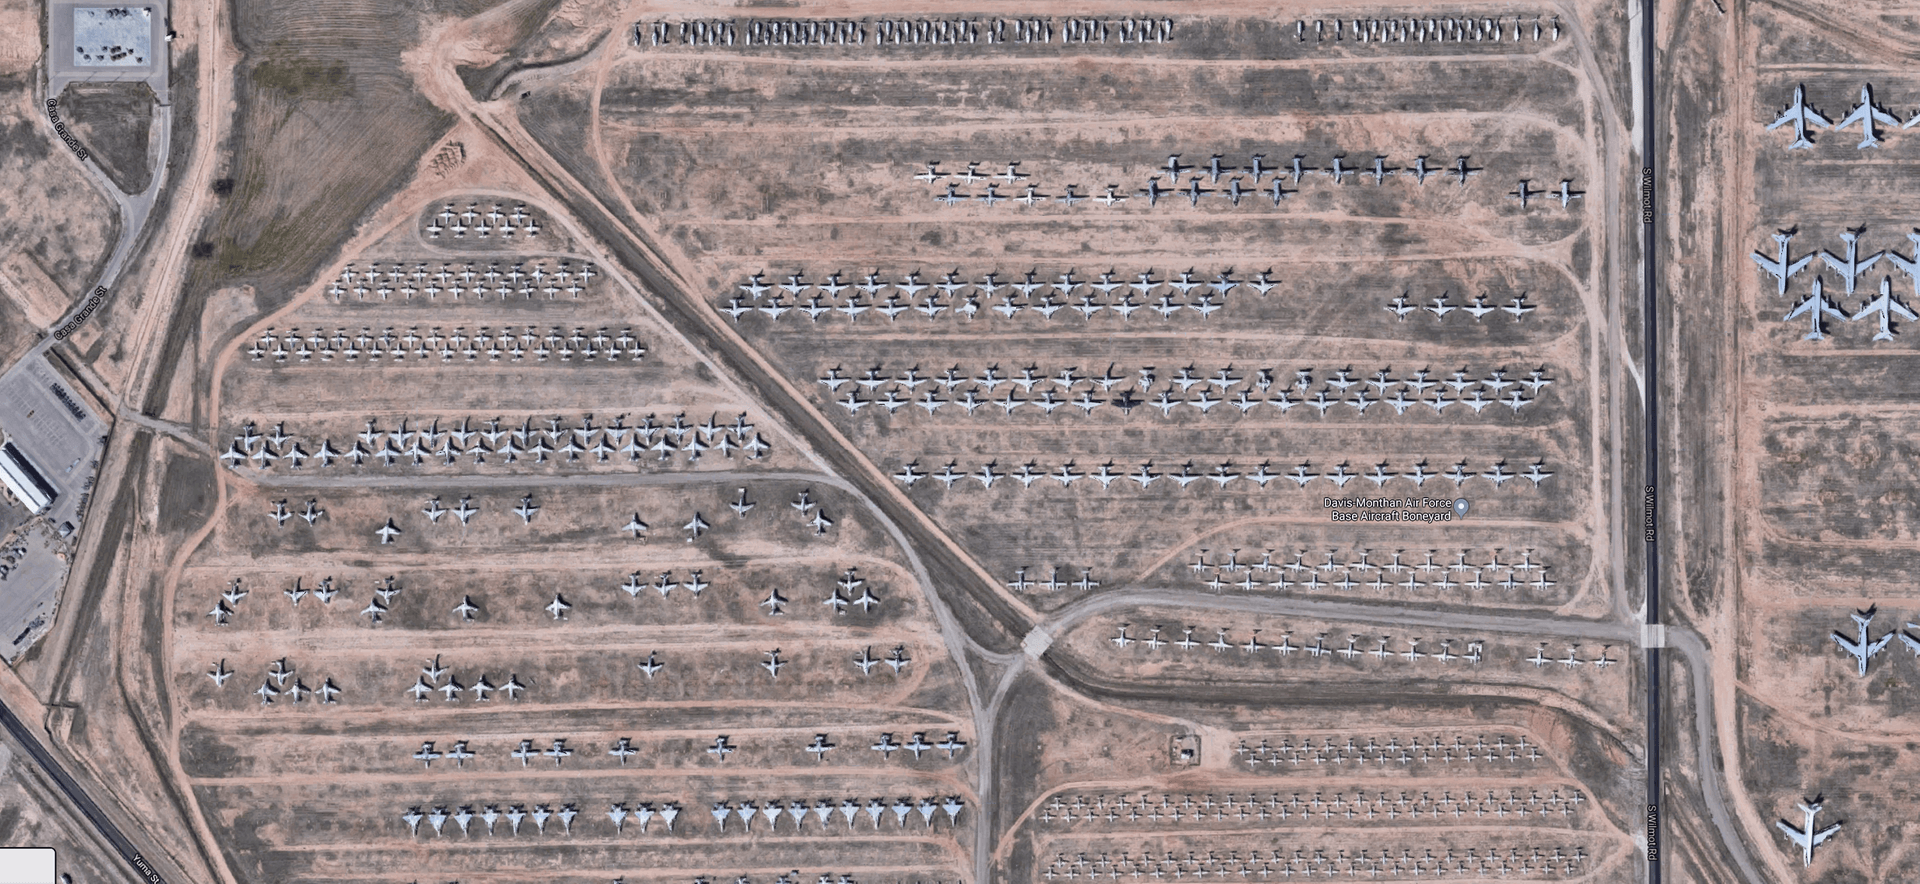 Auf dem Flugzeug-Friedhof in Arizona werden Flugzeuge ausgeschlachtet oder bis zur Wiederverwendung aufbewahrt.